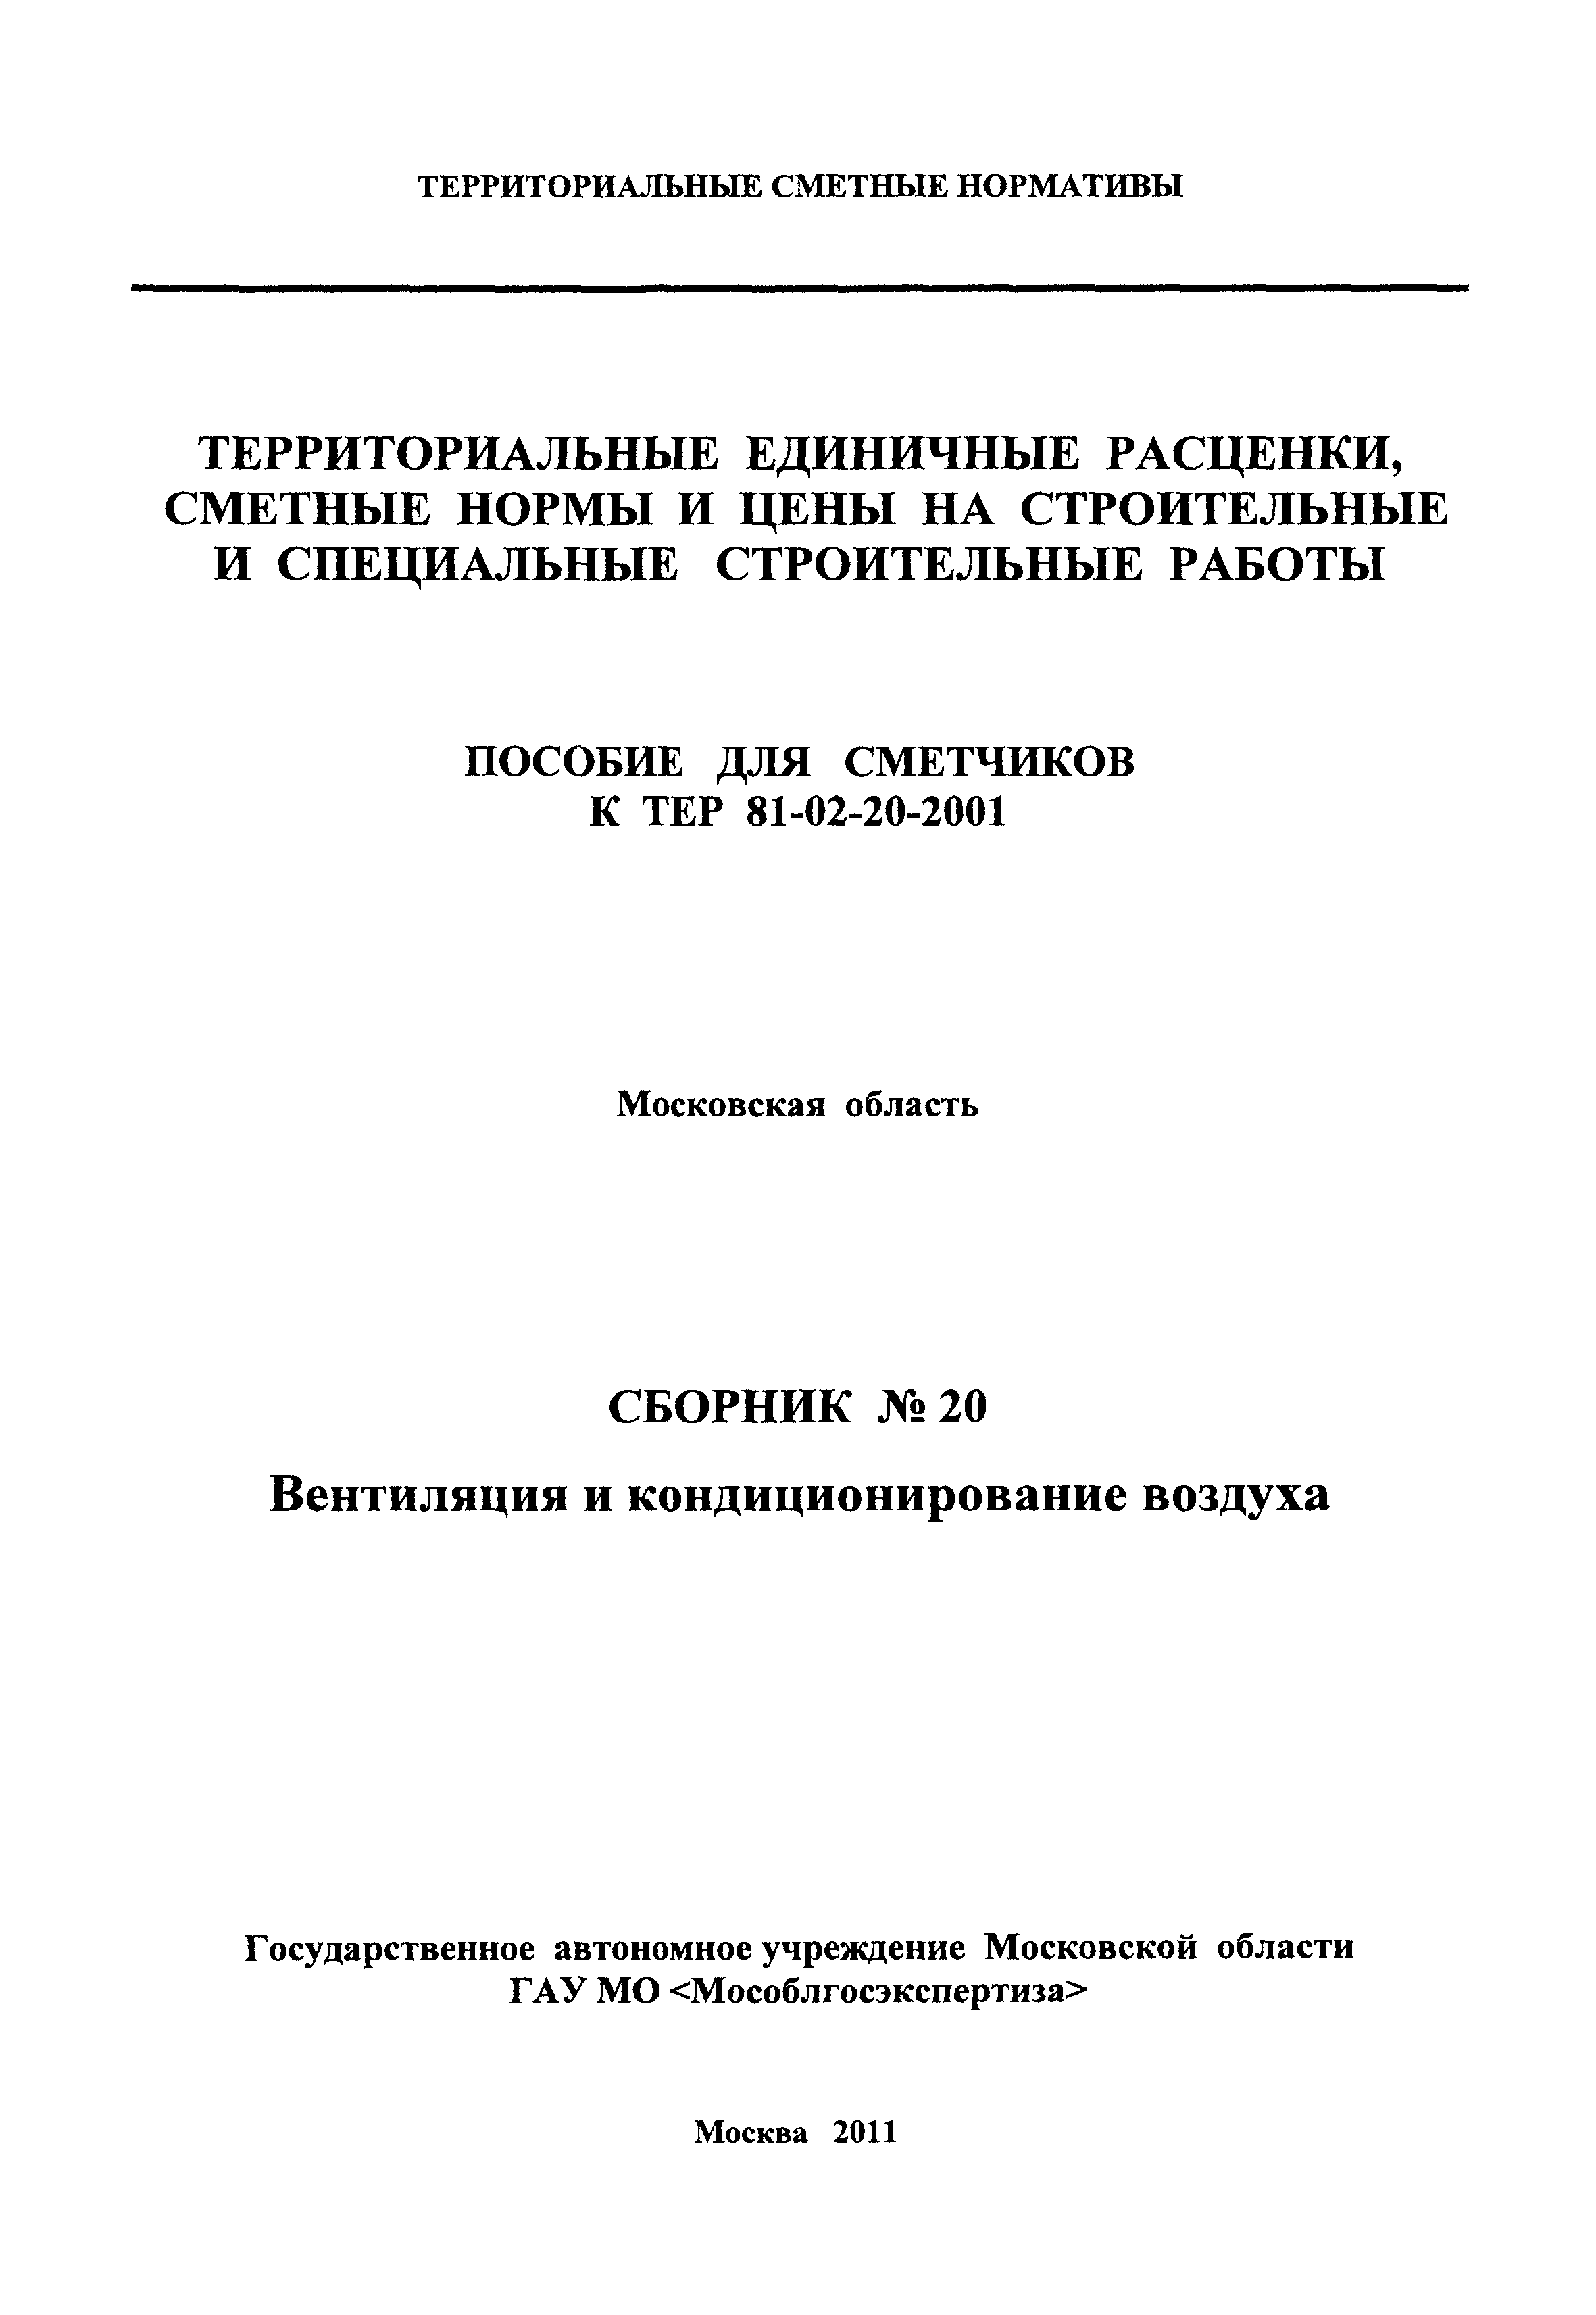 ГЭСНПиТЕР 2001-20 Московской области